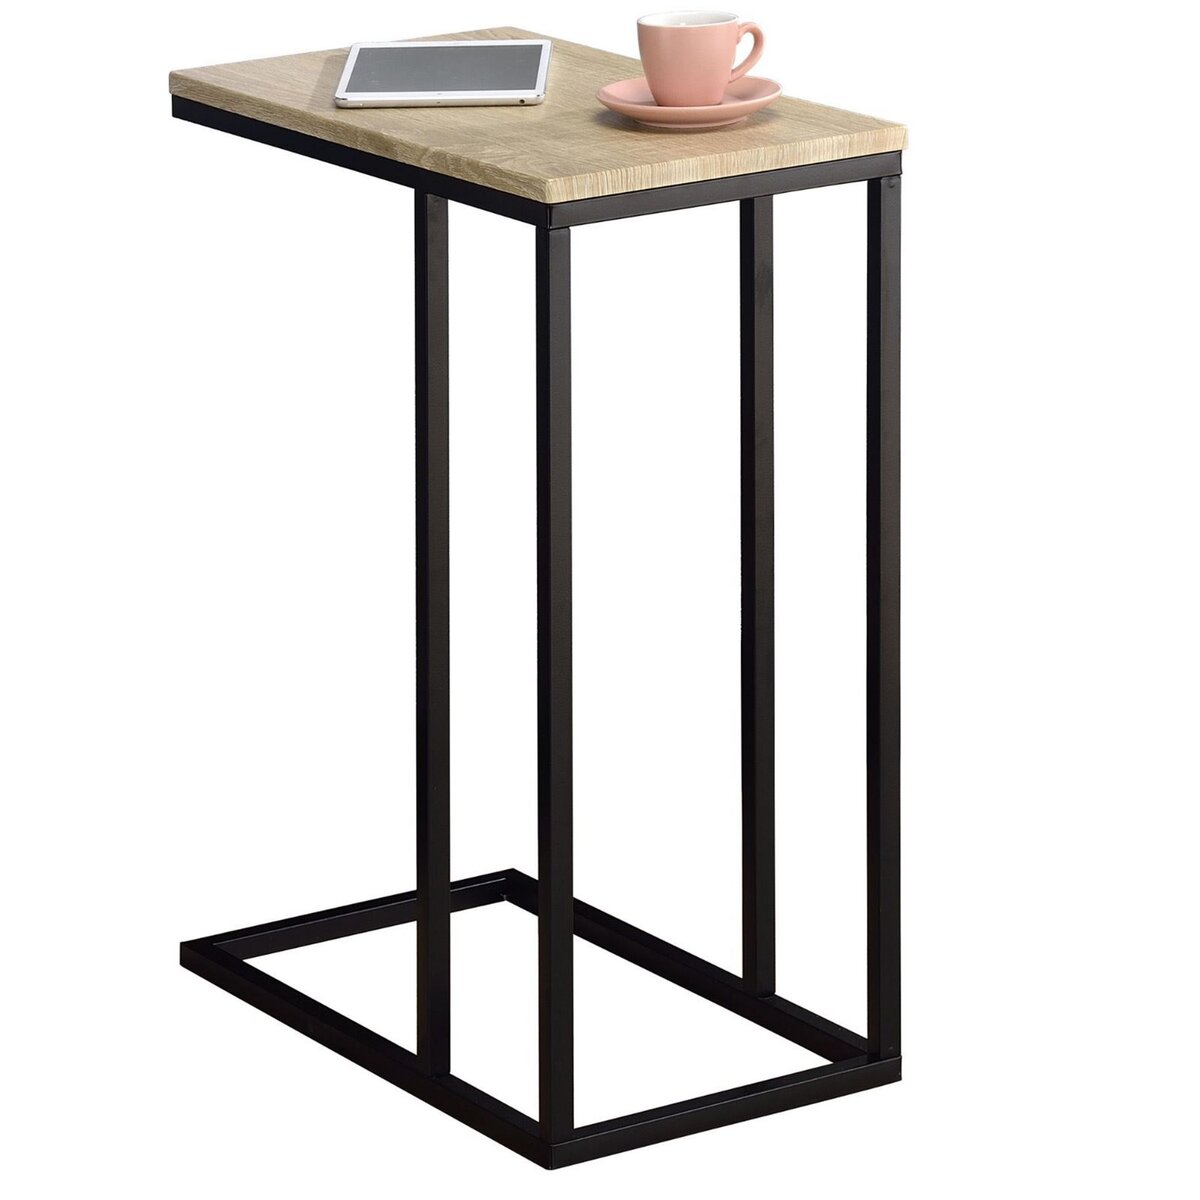 IDIMEX Bout de canapé DEBORA table d'appoint table à café table basse de salon cadre en métal noir et plateau en MDF décor chêne sonoma